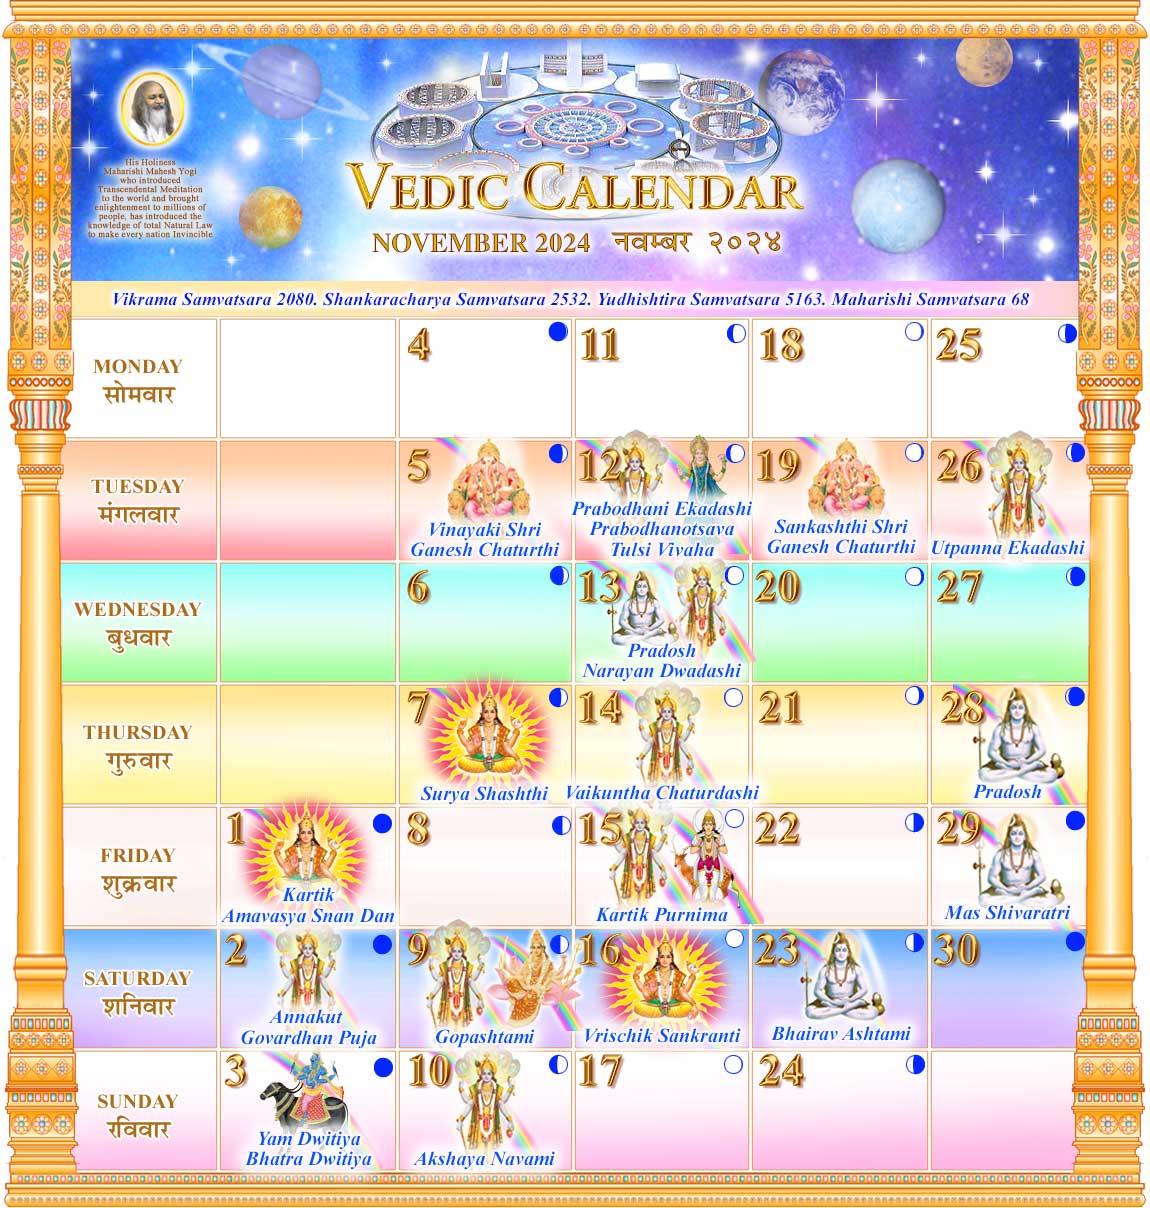 Vedic Calendar November 2020